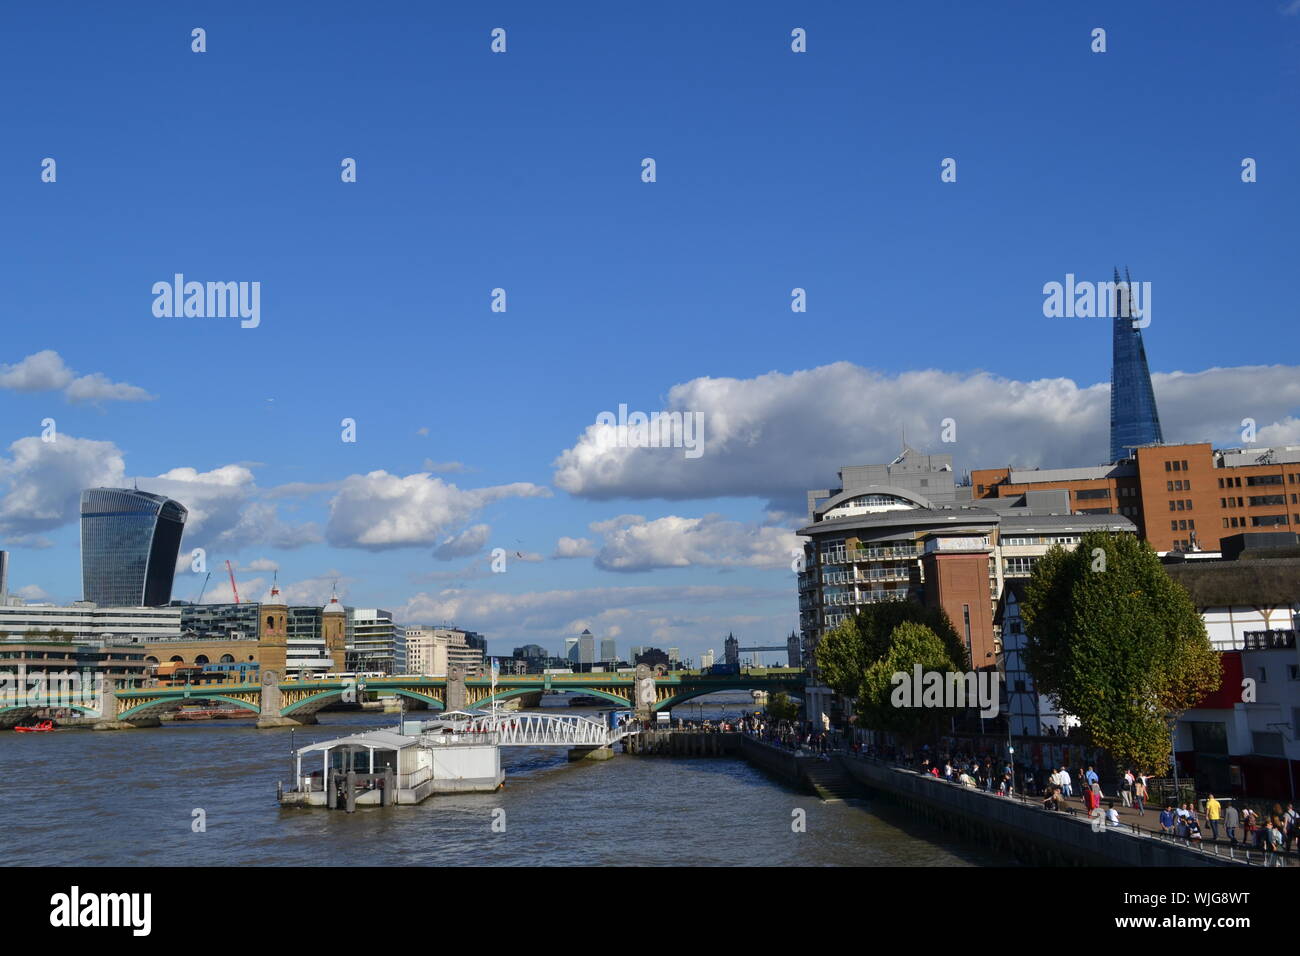 Londres/UK - Agosto 31, 2014: hermosas vistas panorámicas al río Támesis, la ciudad de Londres, el London Bridge, el Shard y terraplén sobre azul cielo soleado. Foto de stock